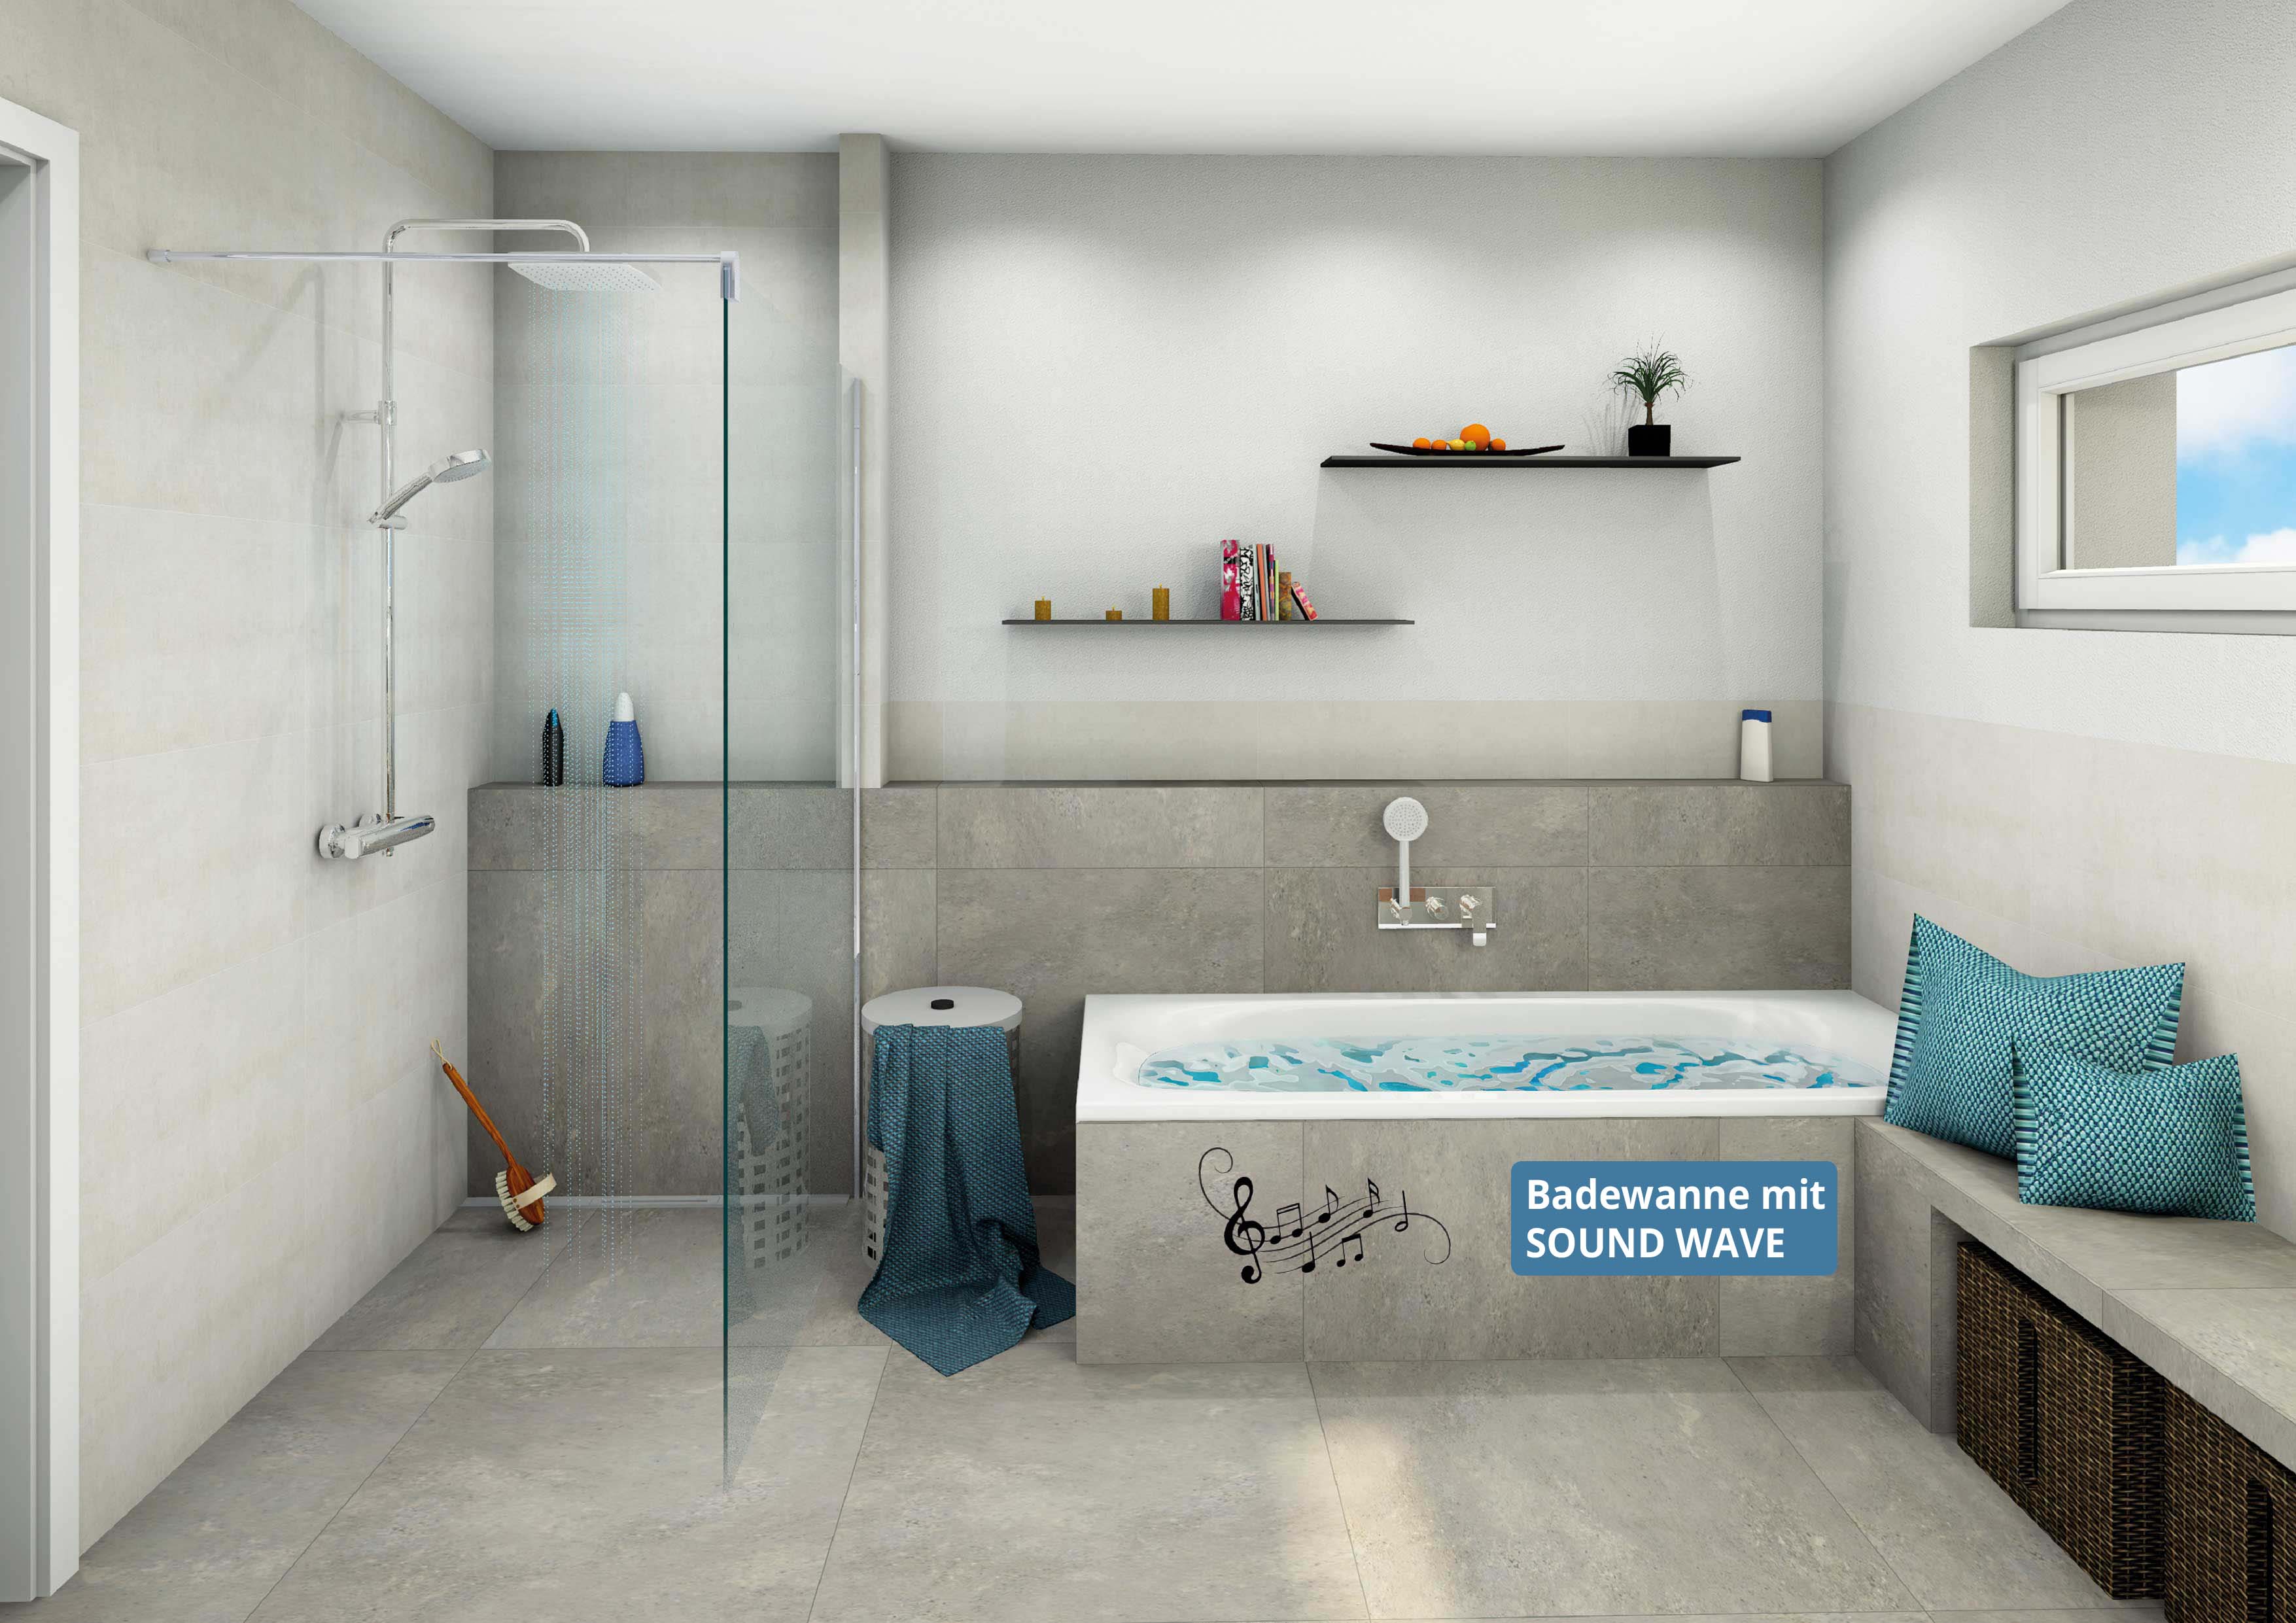 Planungsbeispiel: modernes Badezimmer mit Badewanne mit Sound WAVE